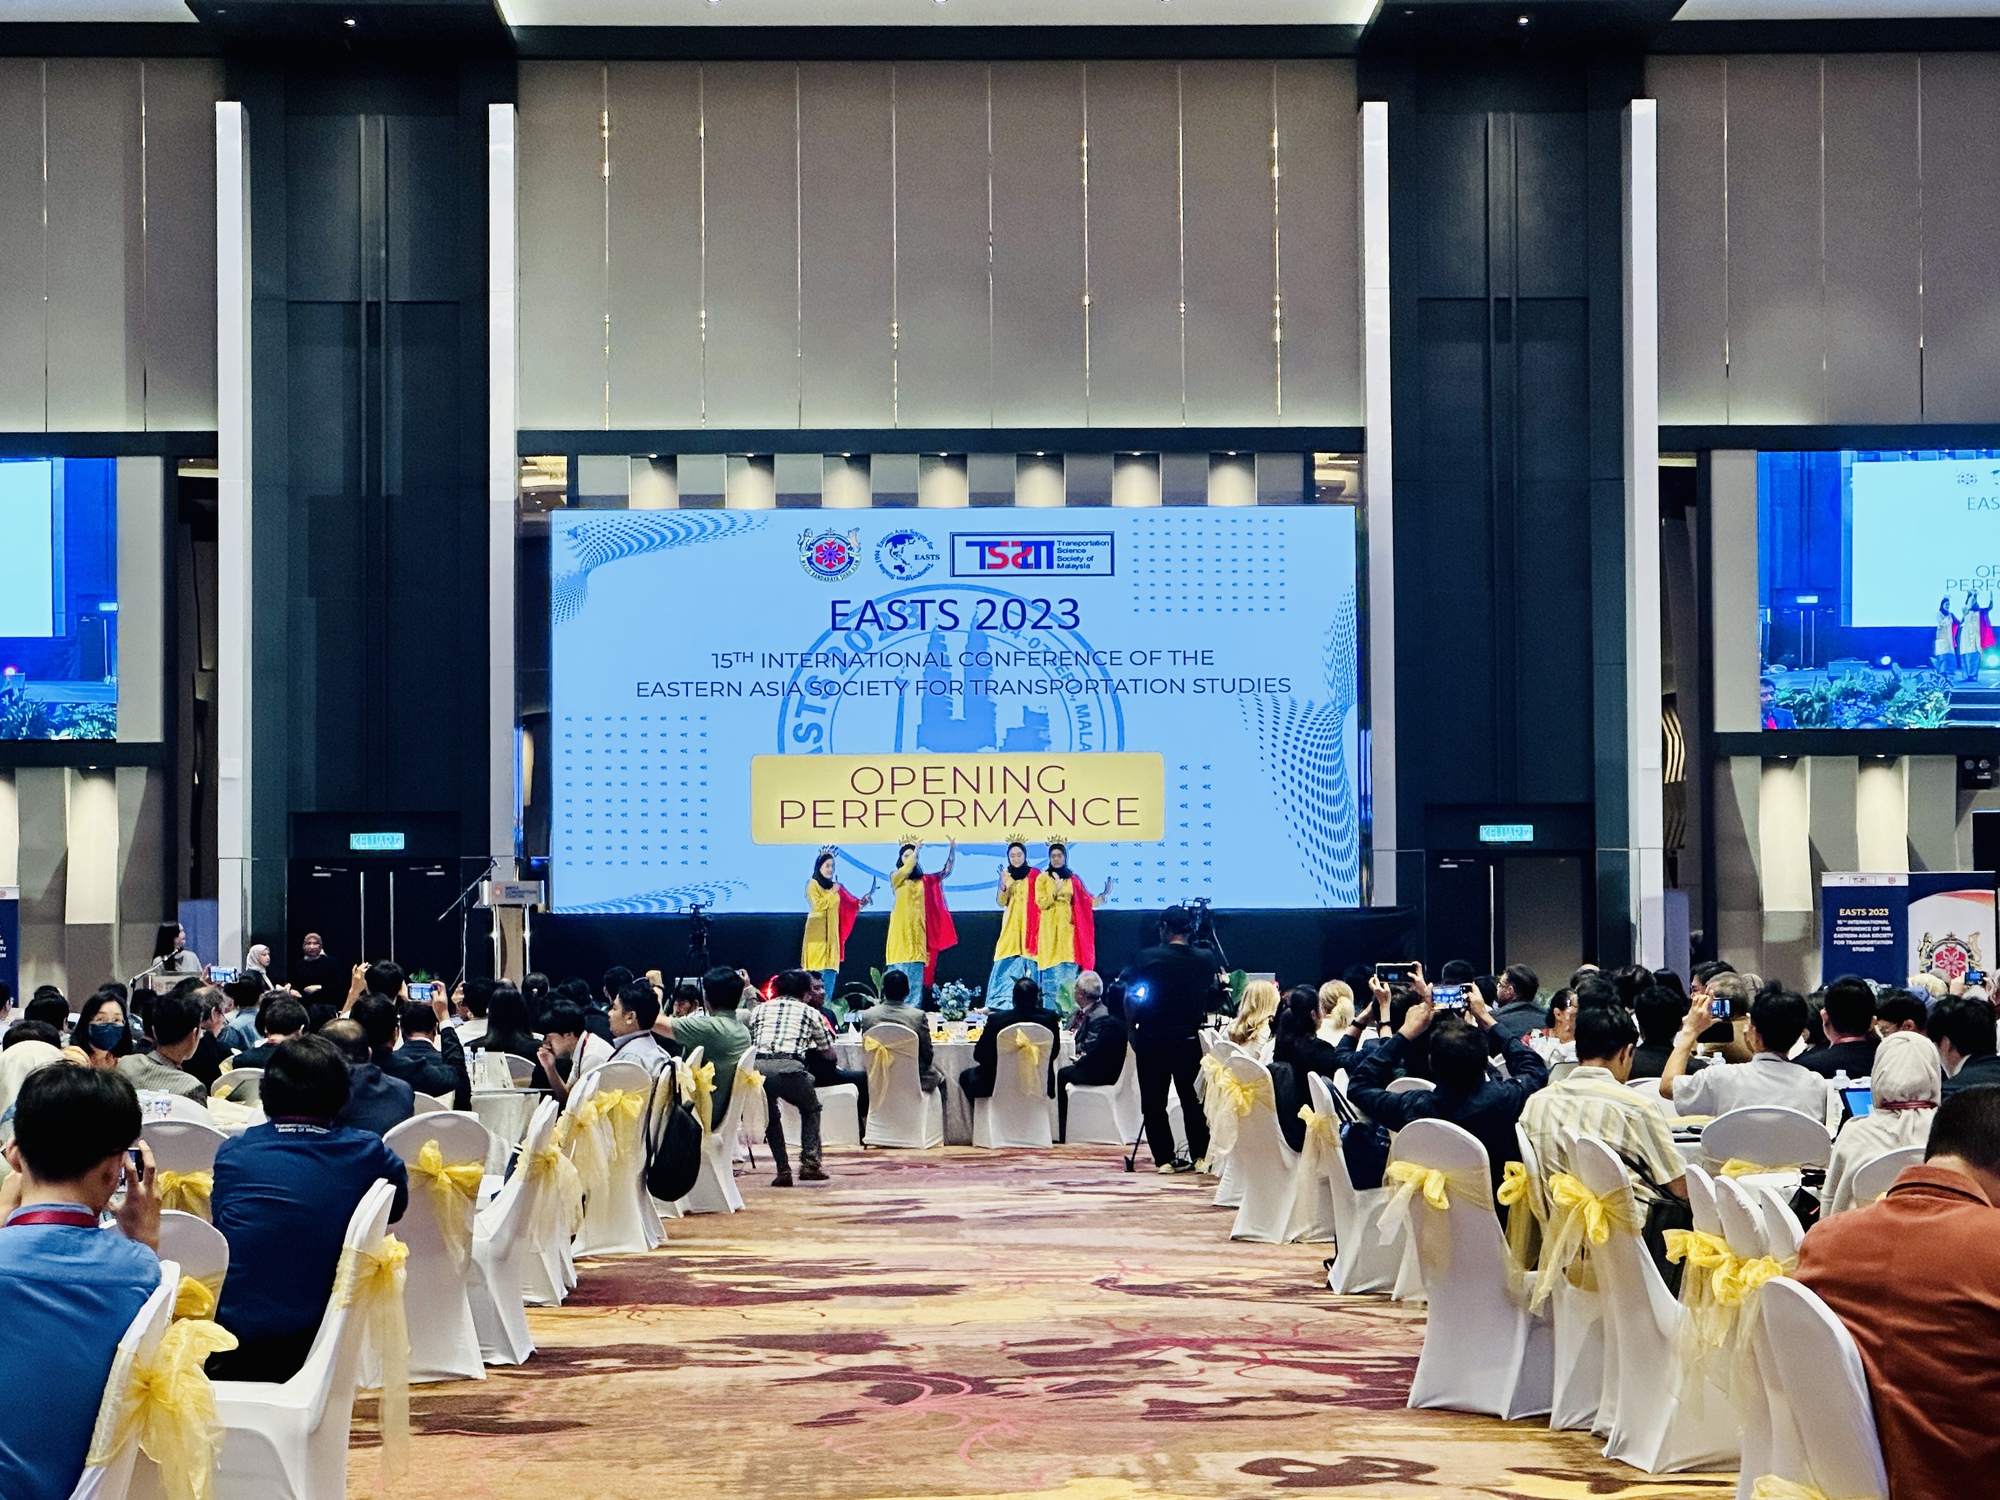 Khai mạc Hội nghị nghiên cứu giao thông Đông Á (EASTS 2023) lần thứ 15 - Ảnh 1.